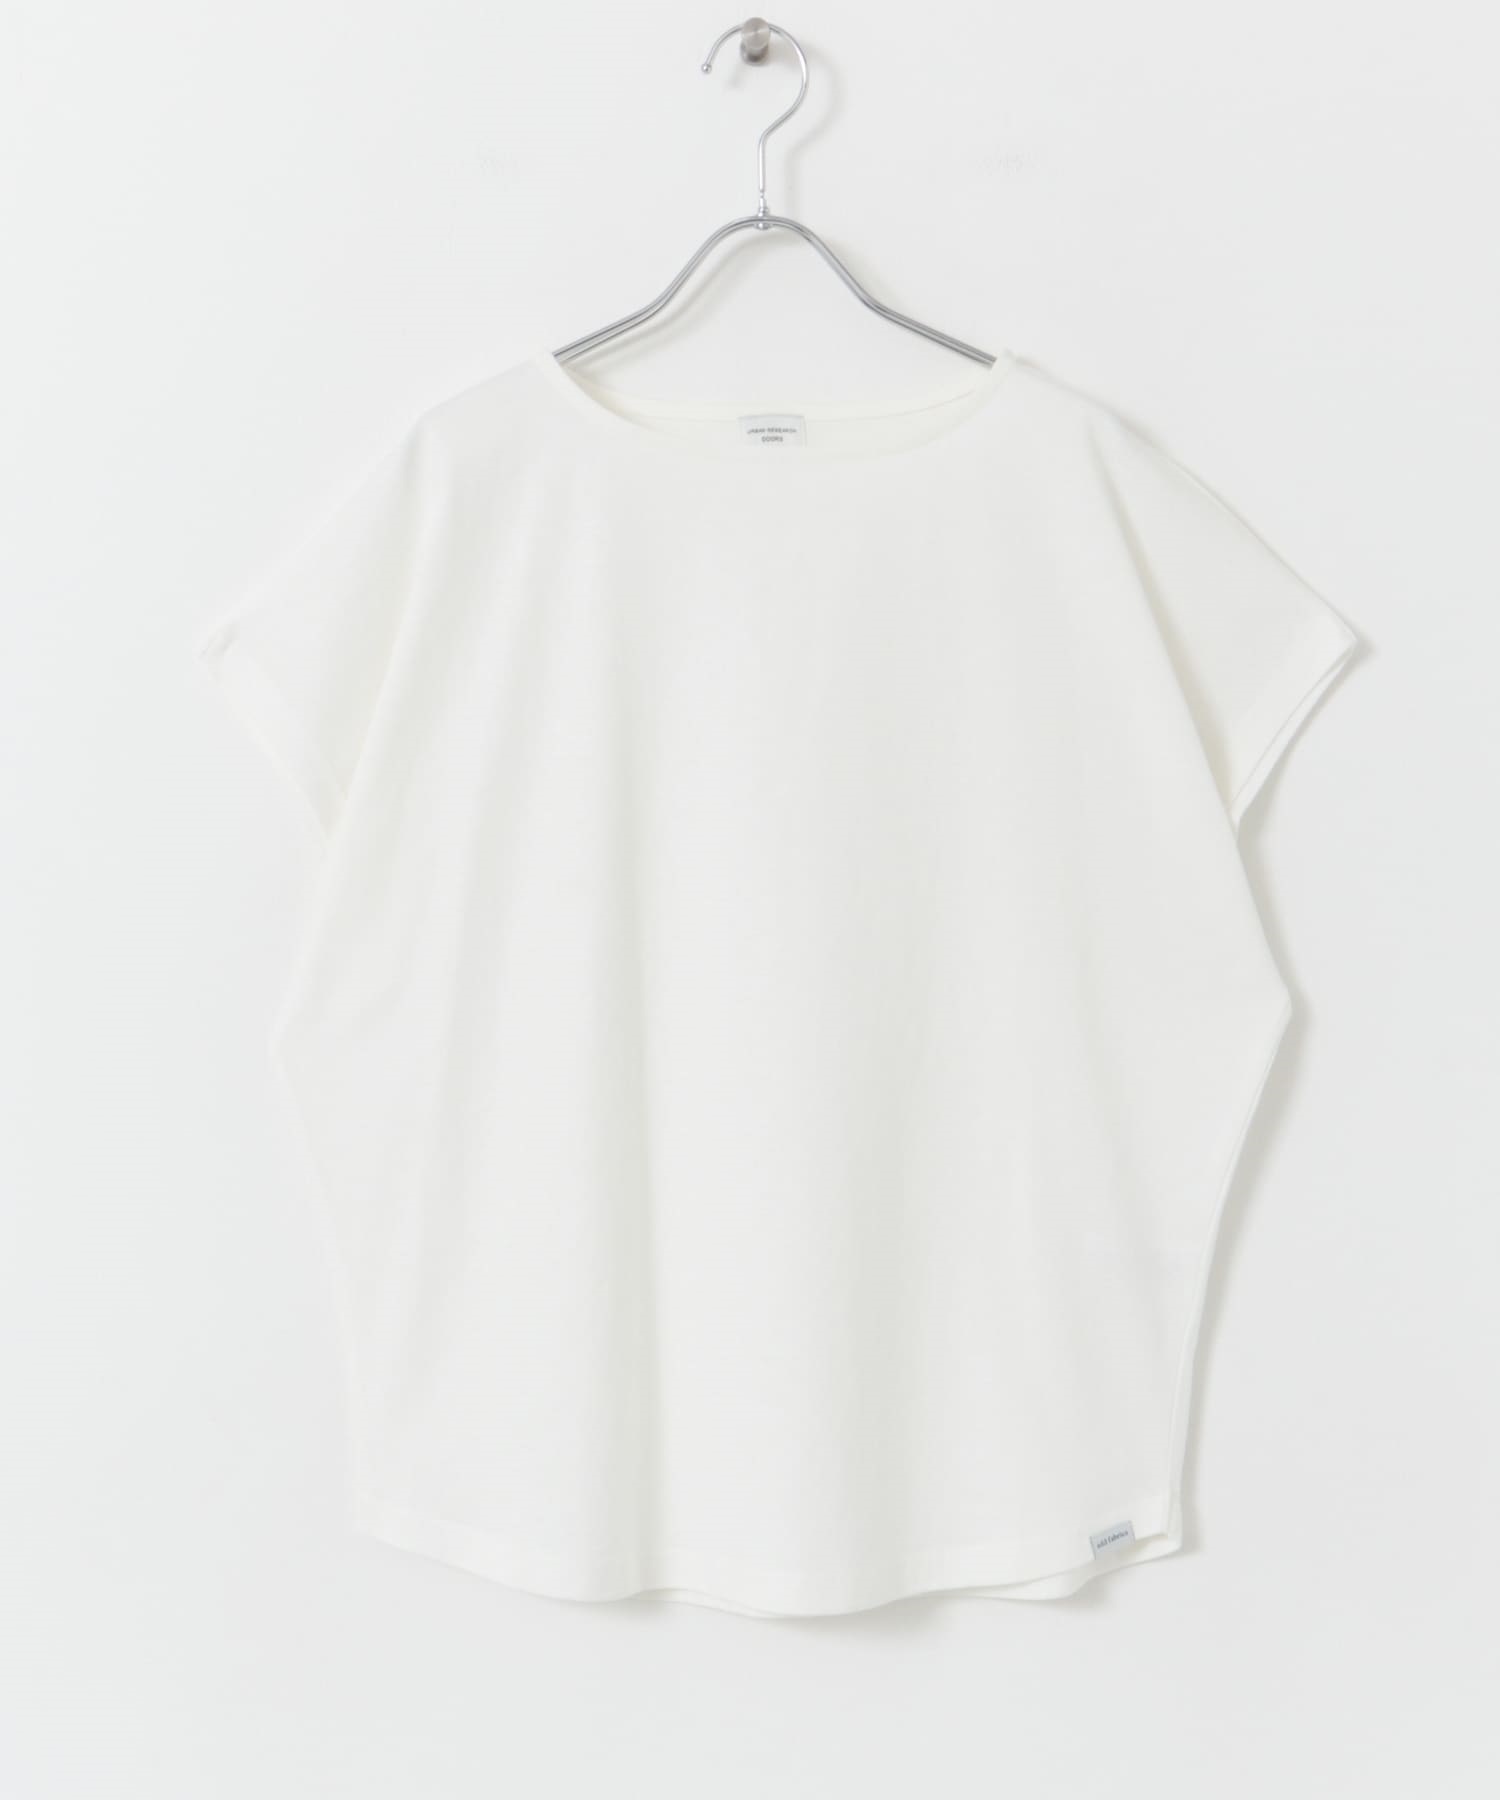 add fabrics 寬版法式袖T恤(白色-M-WHITE)